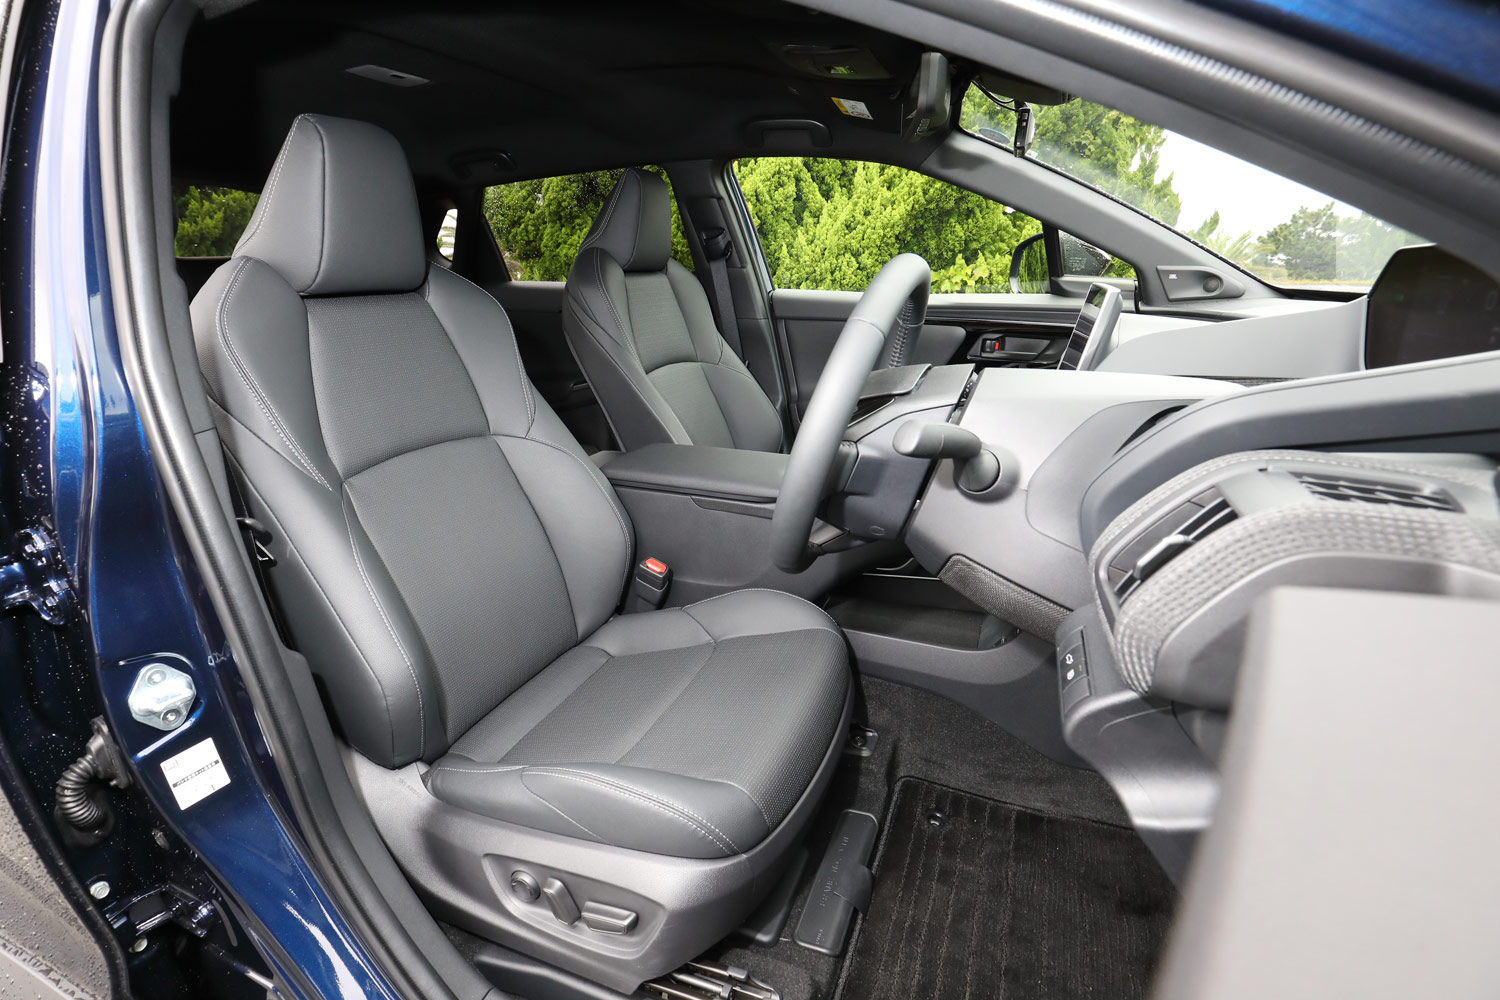 シートの仕様は、モデルやグレードによって表皮の種類や電動調整機構の細かさなどが異なっており、「トヨタbZ4X」には運転席8way、助手席4Wayの電動調整機構を備えた合皮のシートが装備される。